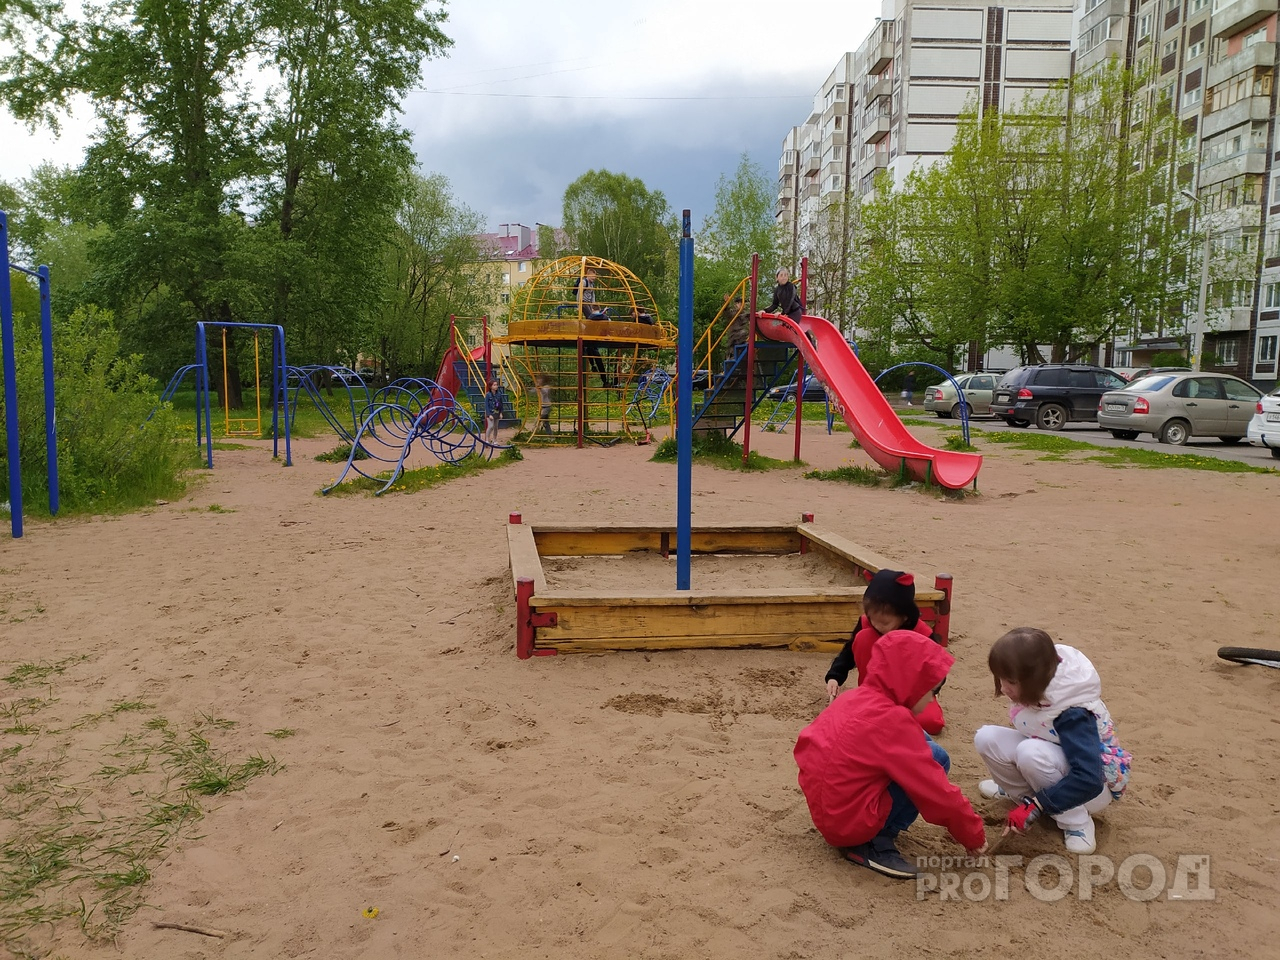 "Стресс для многих": почему ярославских детей не хотят отводить в дежурные группы